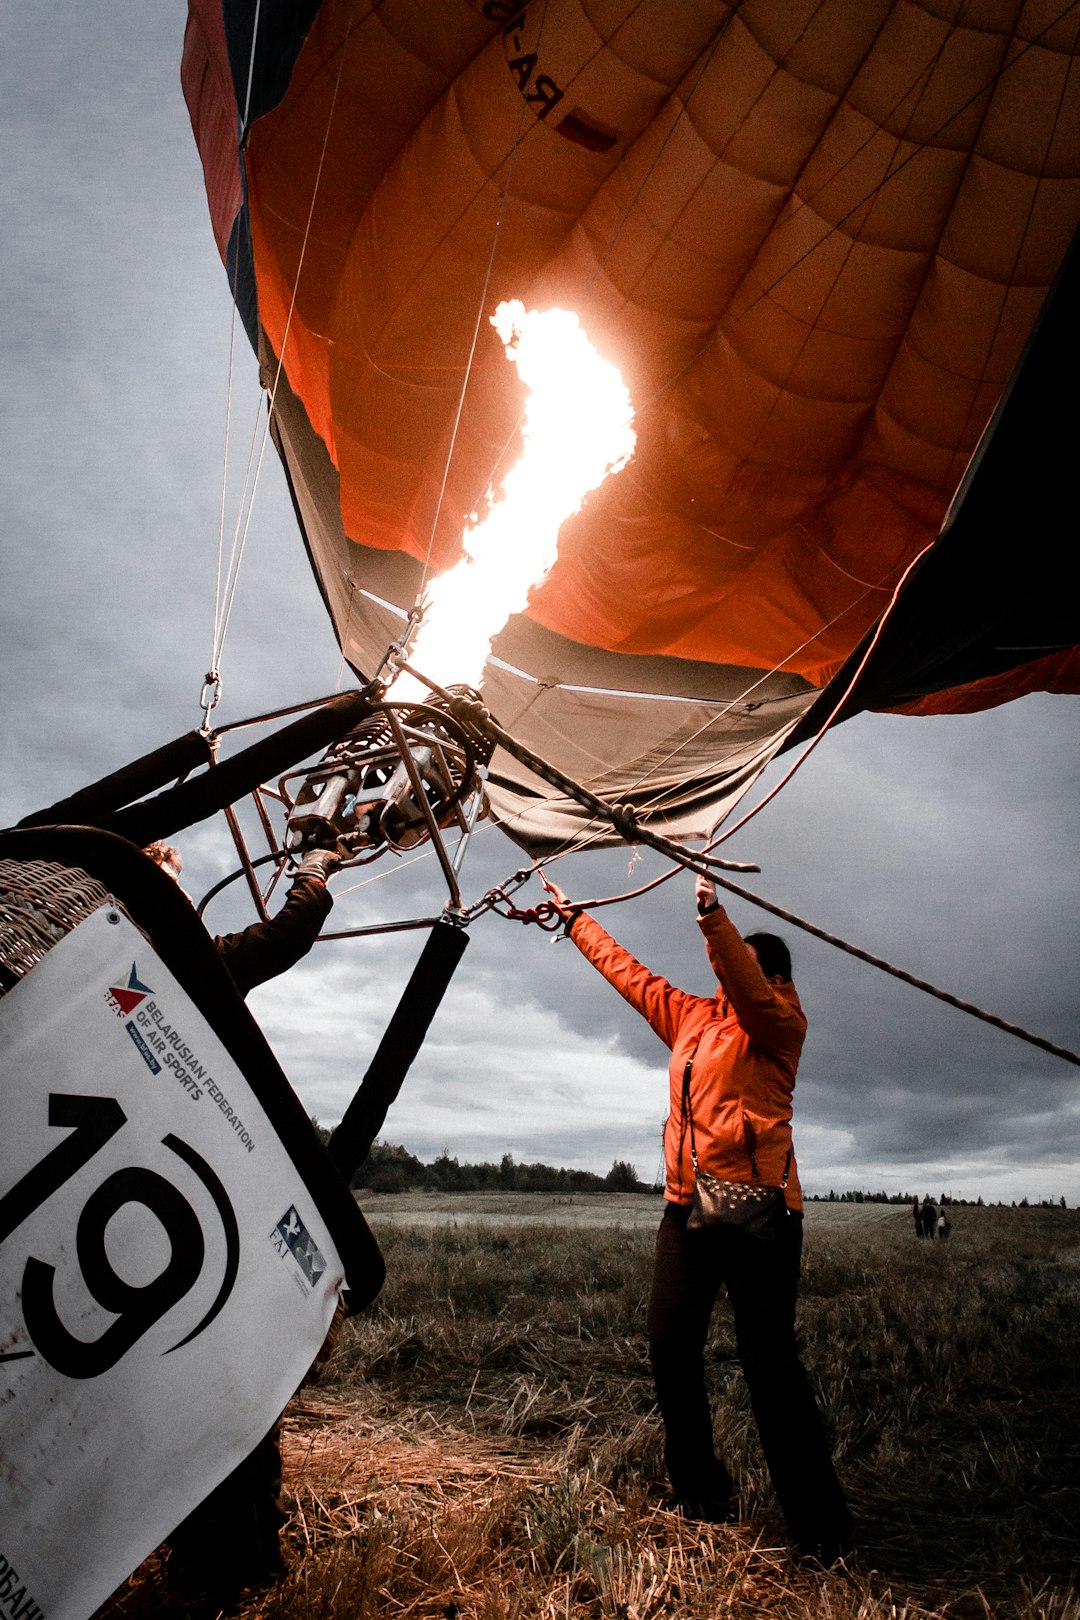 Hot air ballooning photo spot Ivanovo Vladimir